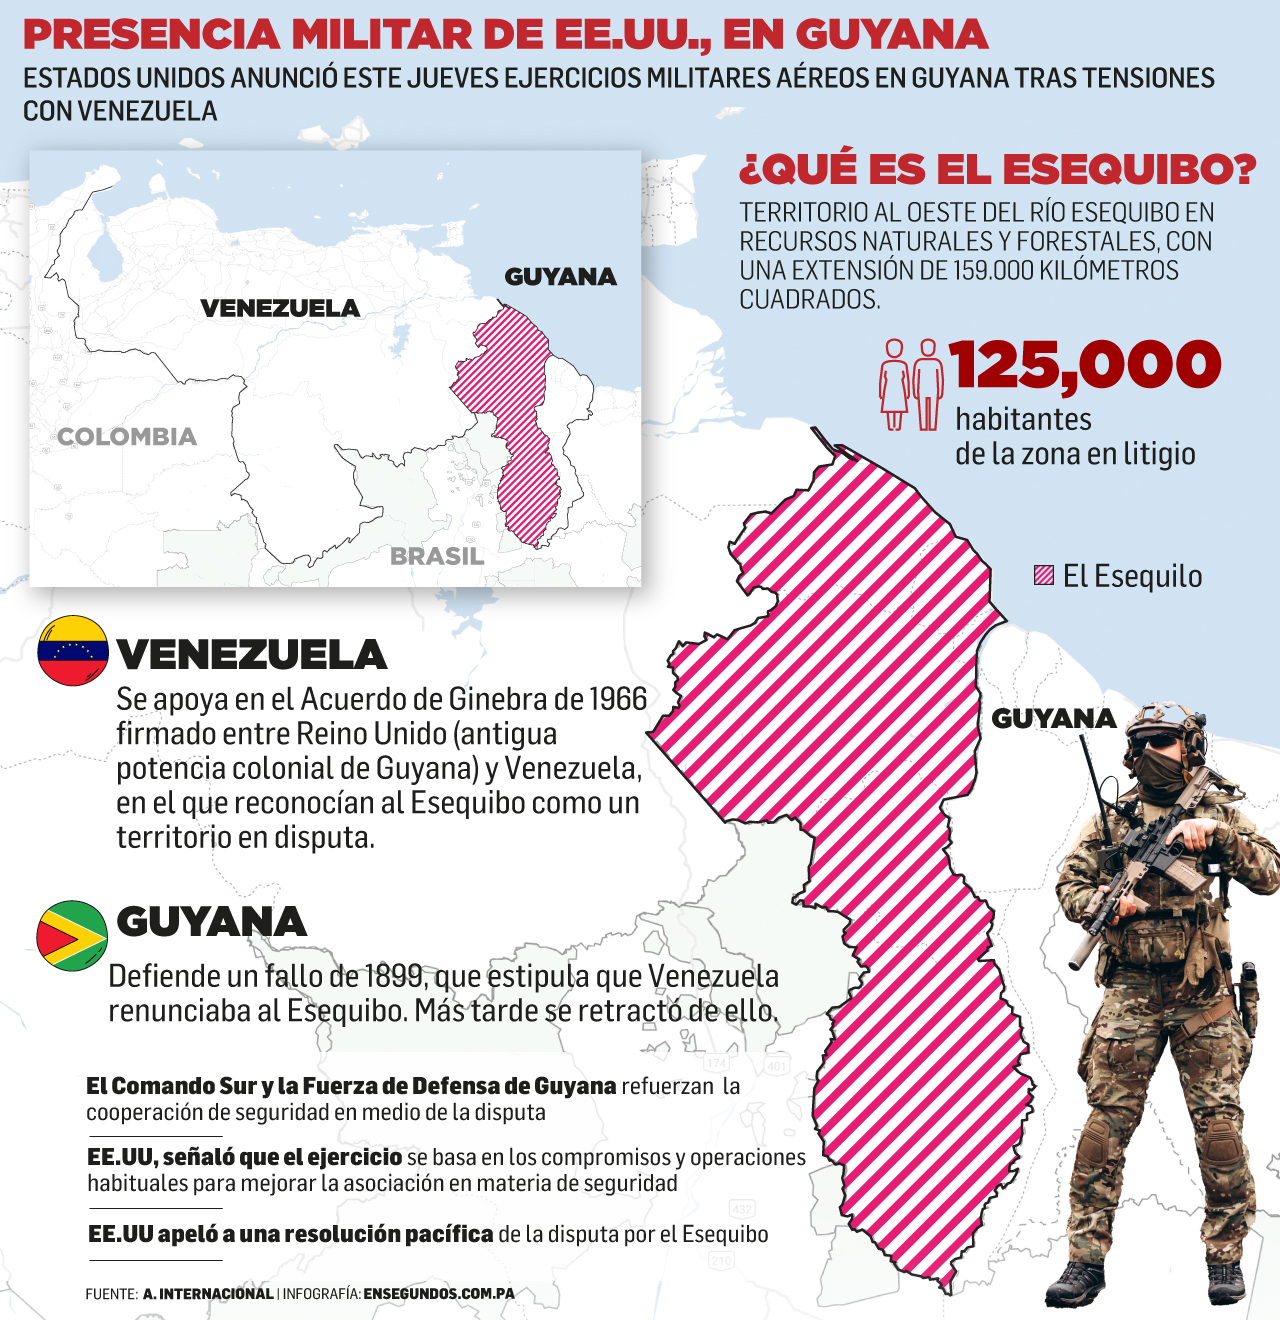 Presencia militar de EE.UU., en Guyana